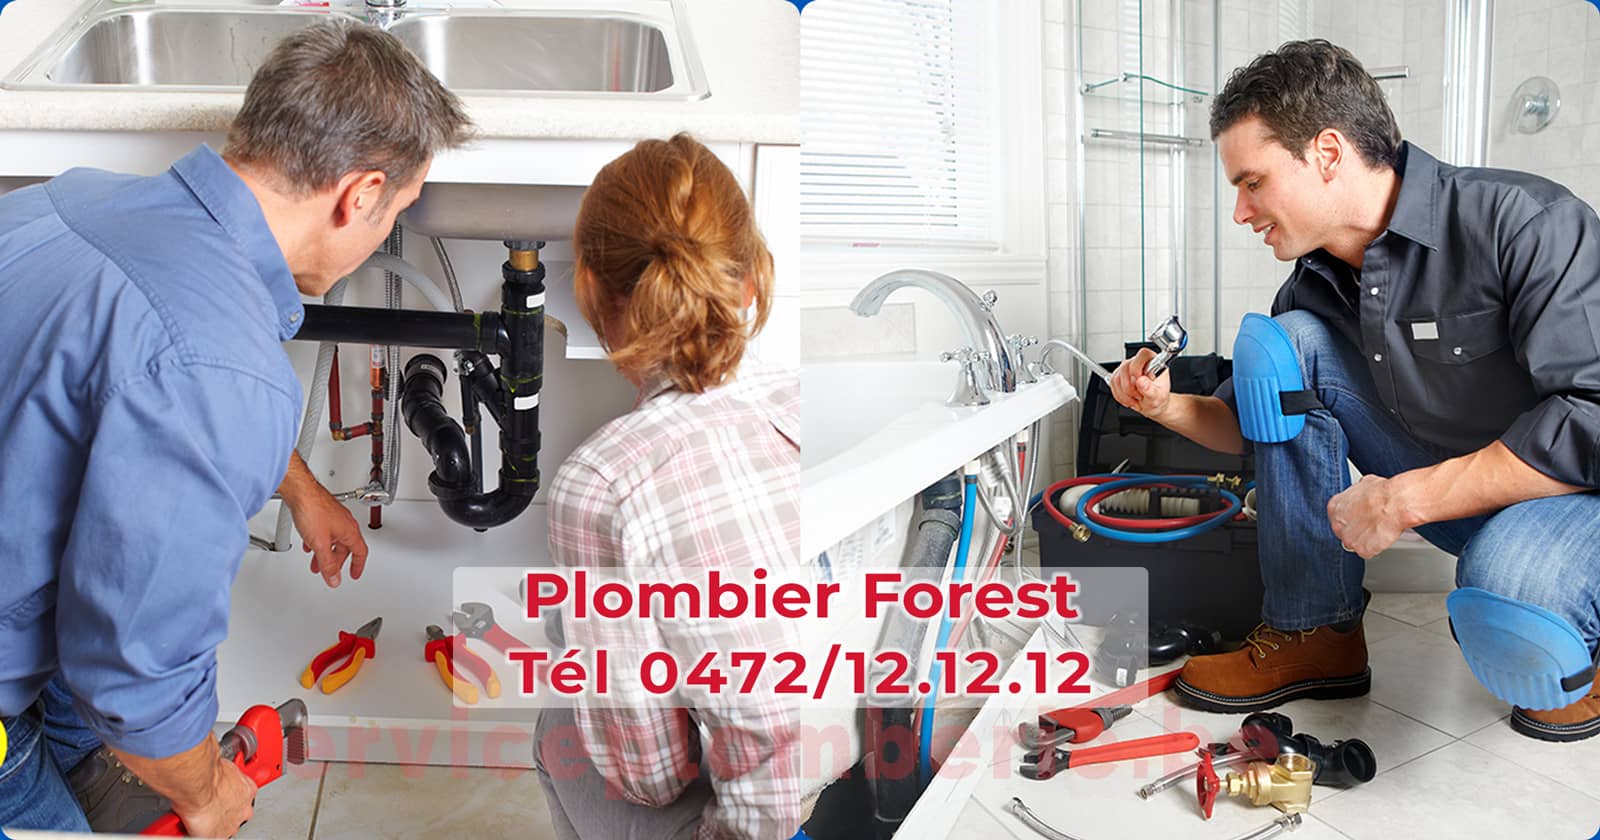 Plombier Forest Agréé Professionnel Service Plomberie Tél 0472/12.12.12